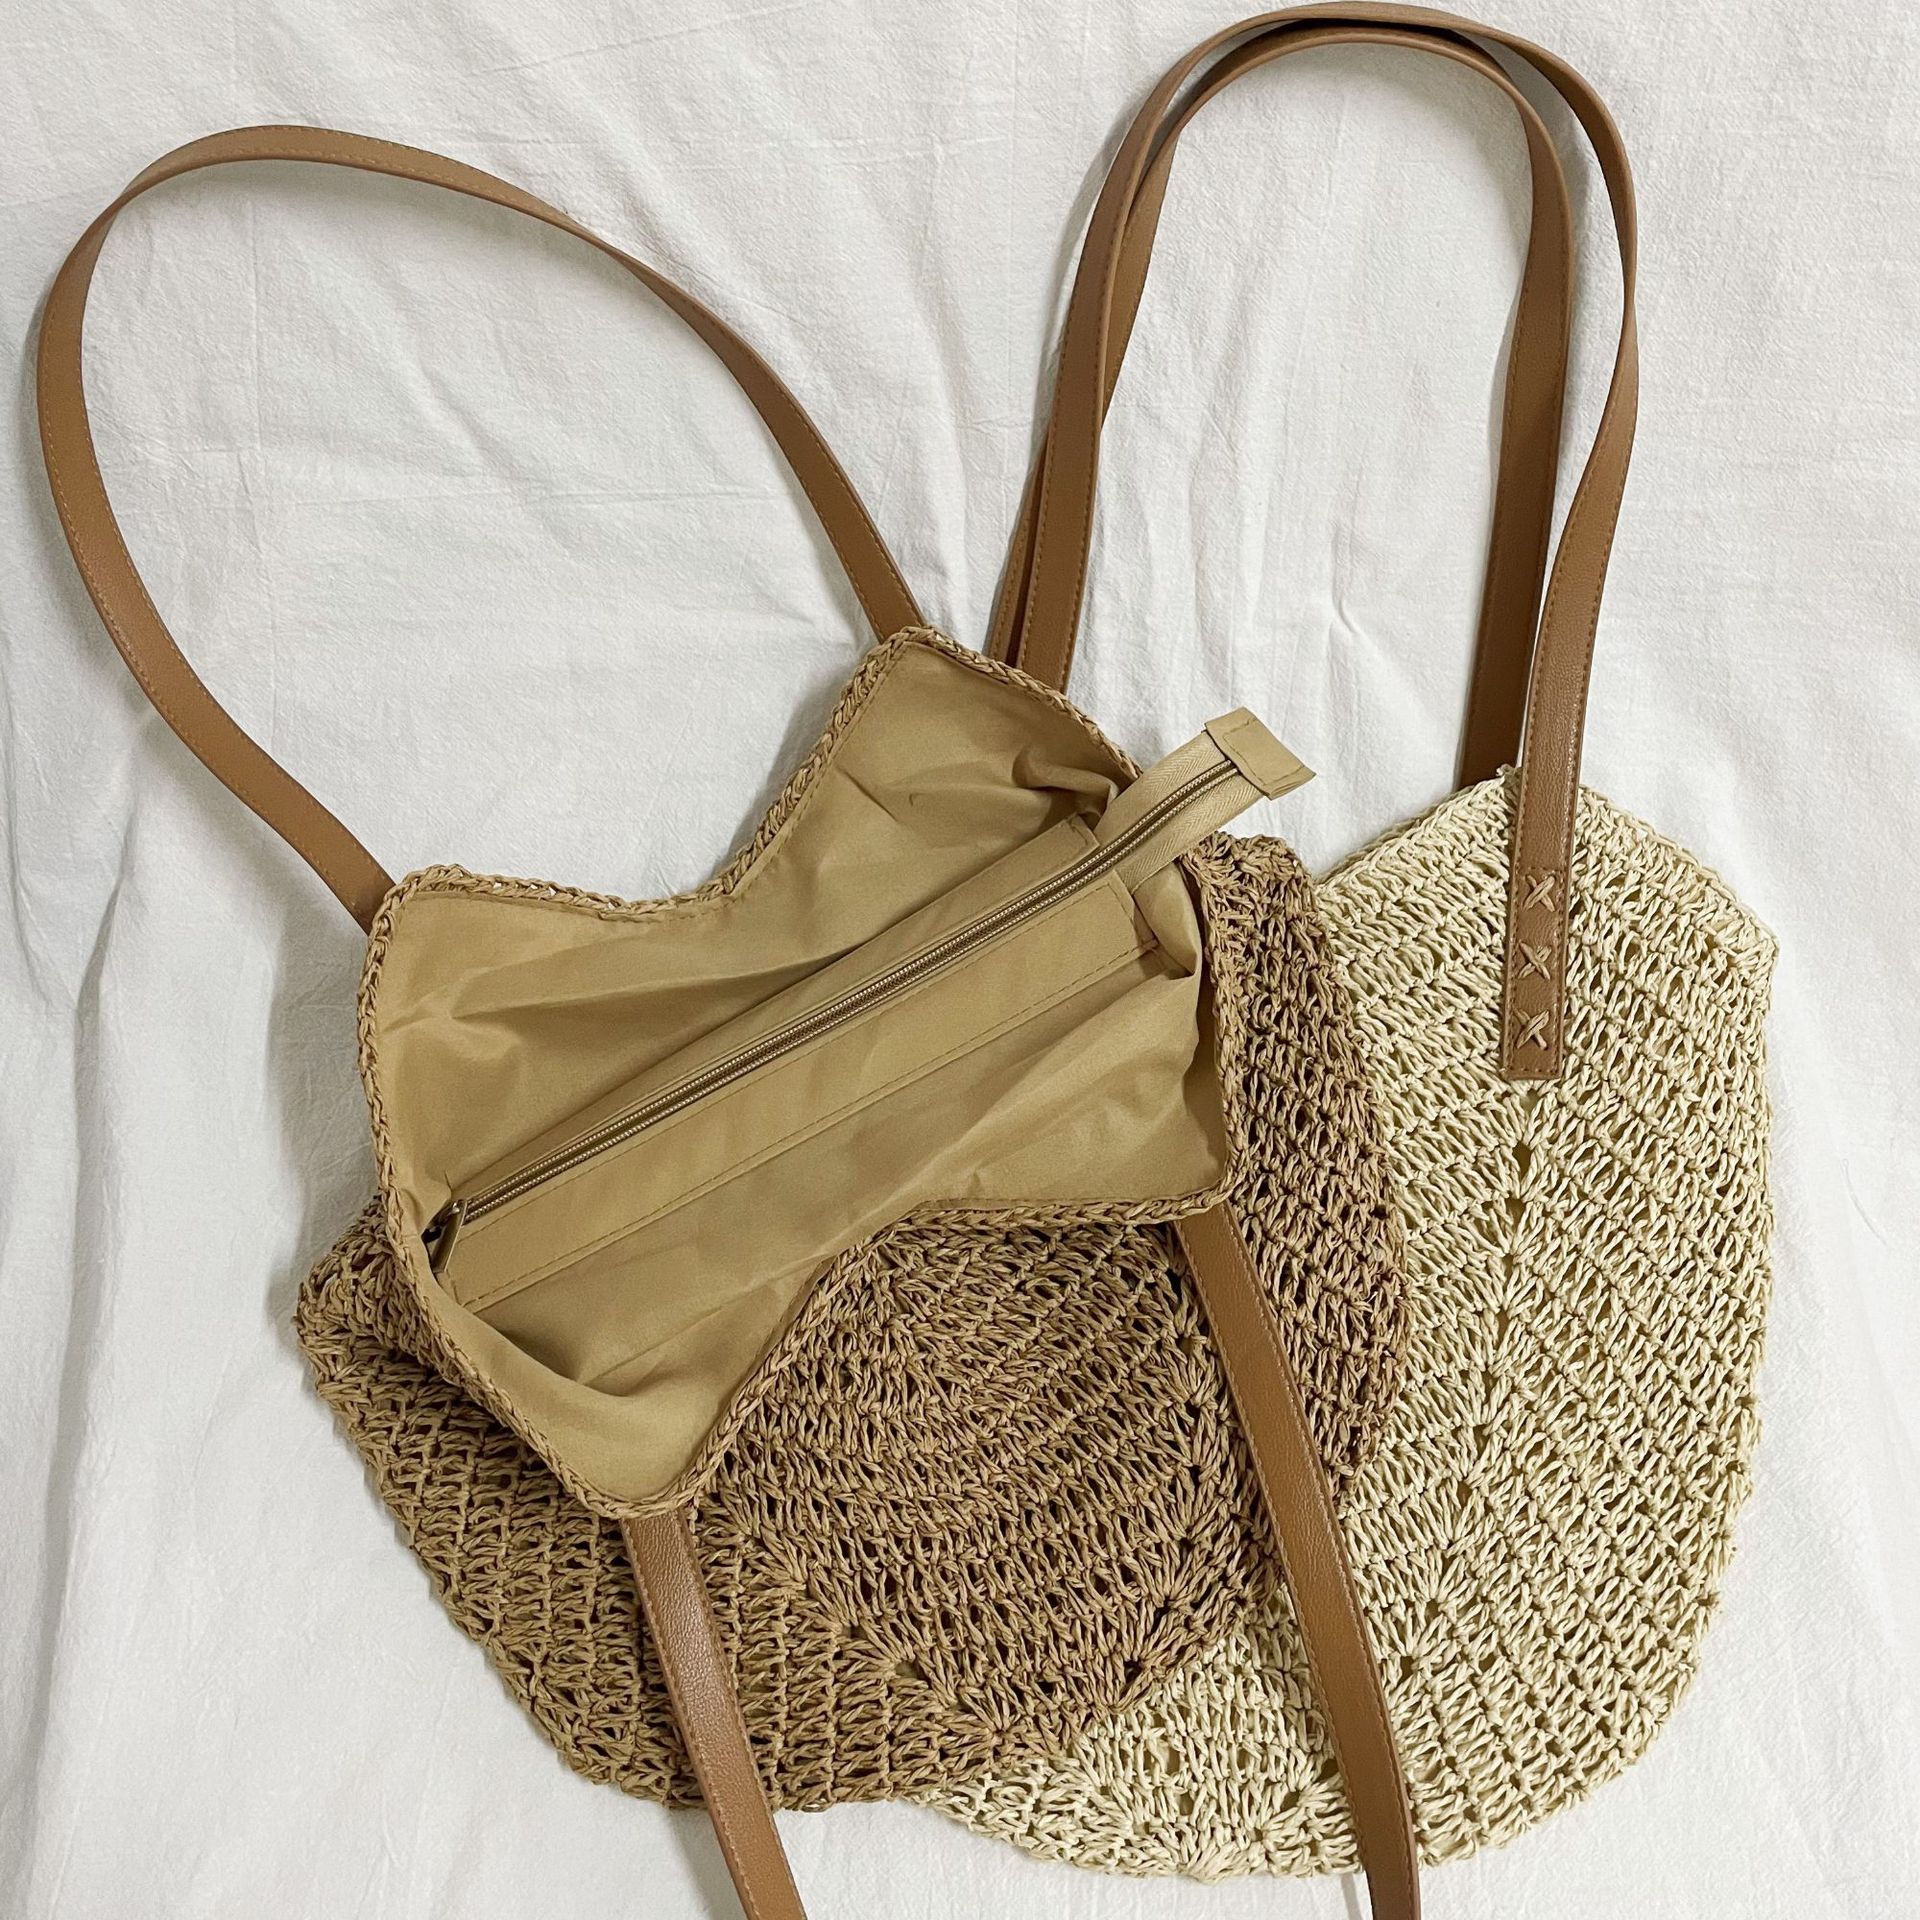 New Hand-Woven Bag Fashion Women Shoulder Bag Straw Bag Paper String Vacation Beach Bag Shoulder Back